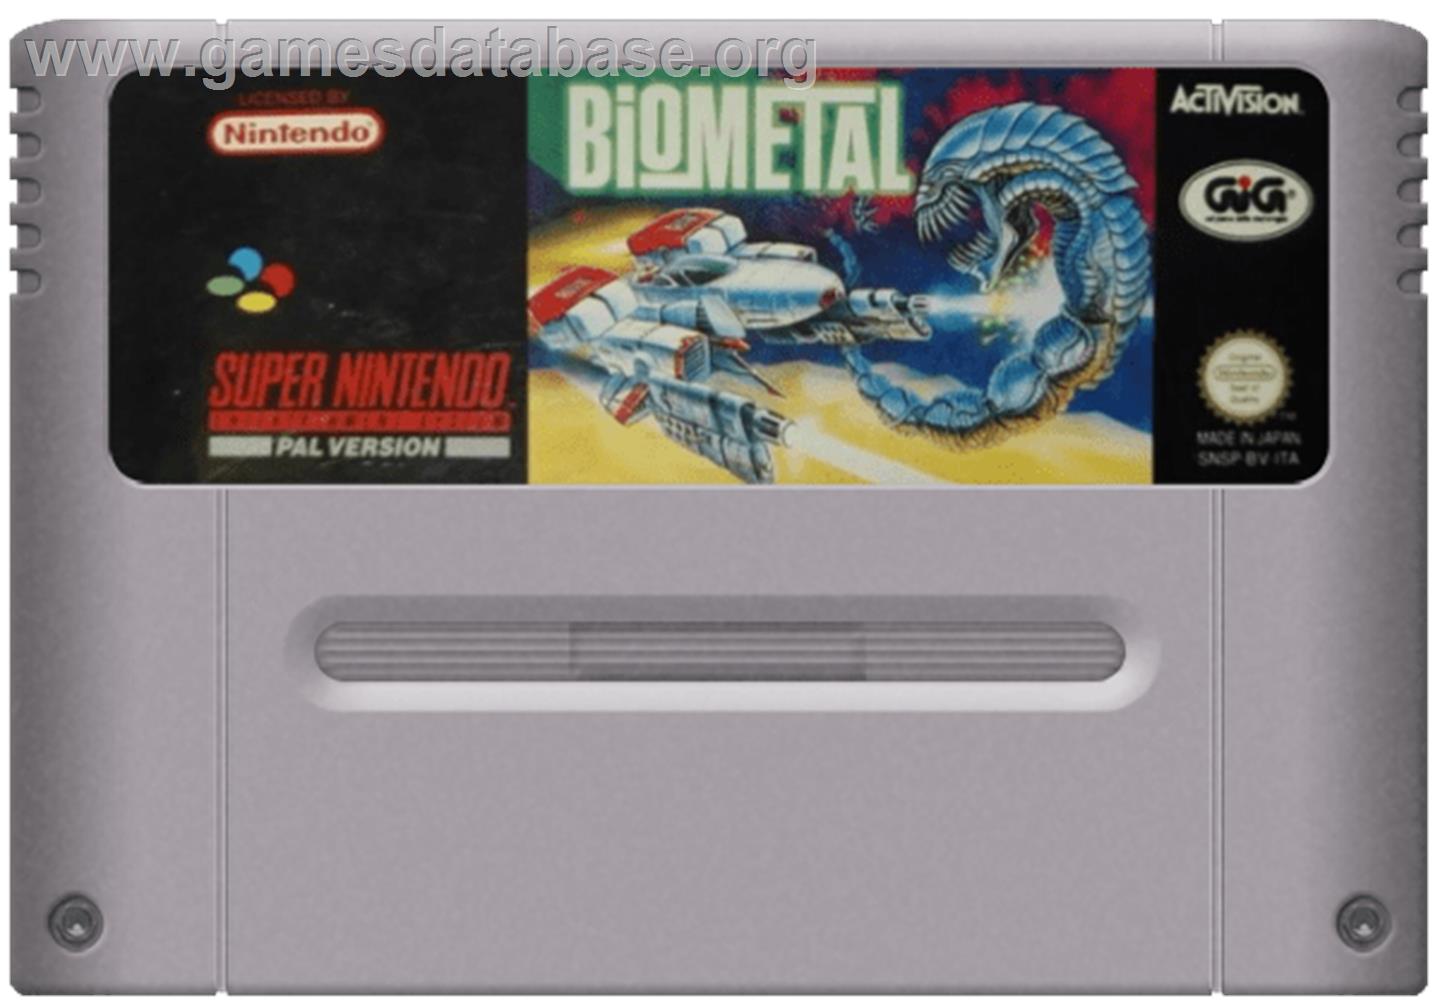 BioMetal - Nintendo SNES - Artwork - Cartridge